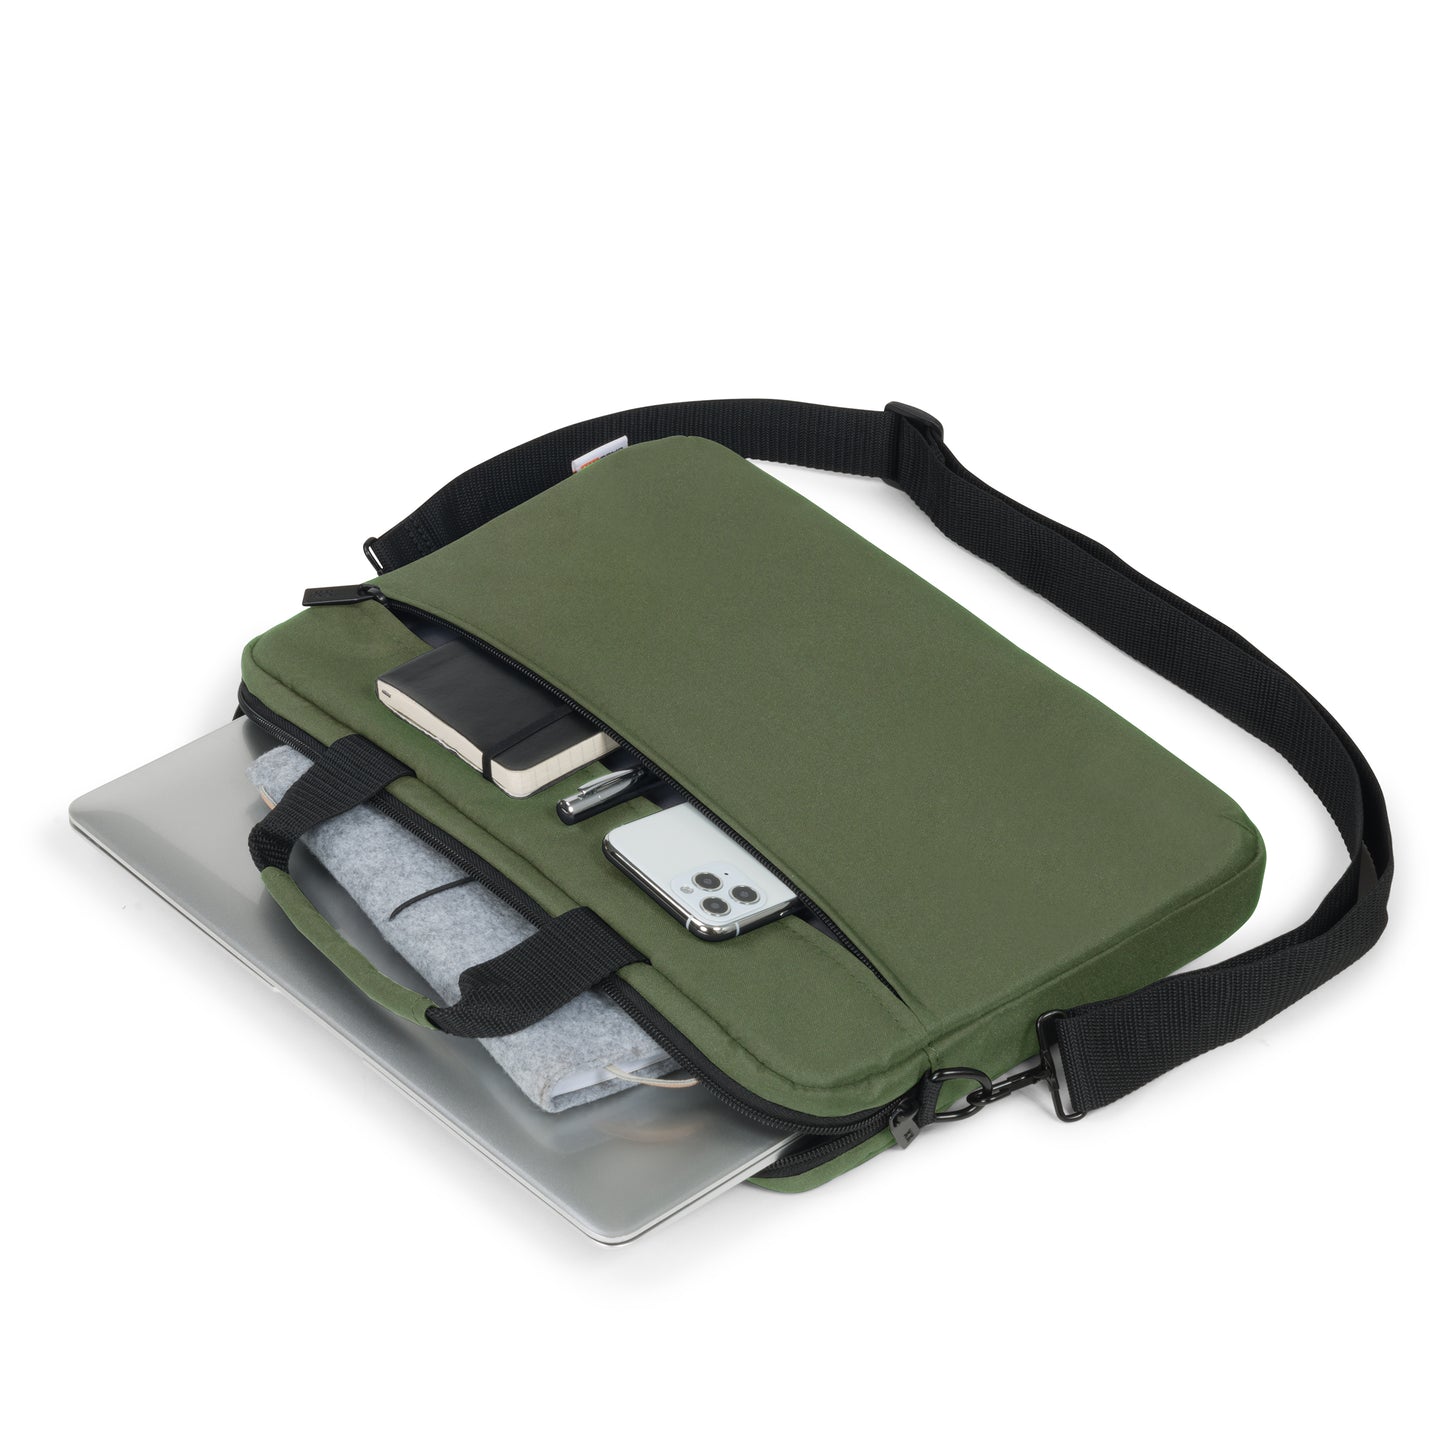 Laptop Case Slim 14-15.6" Olive Green